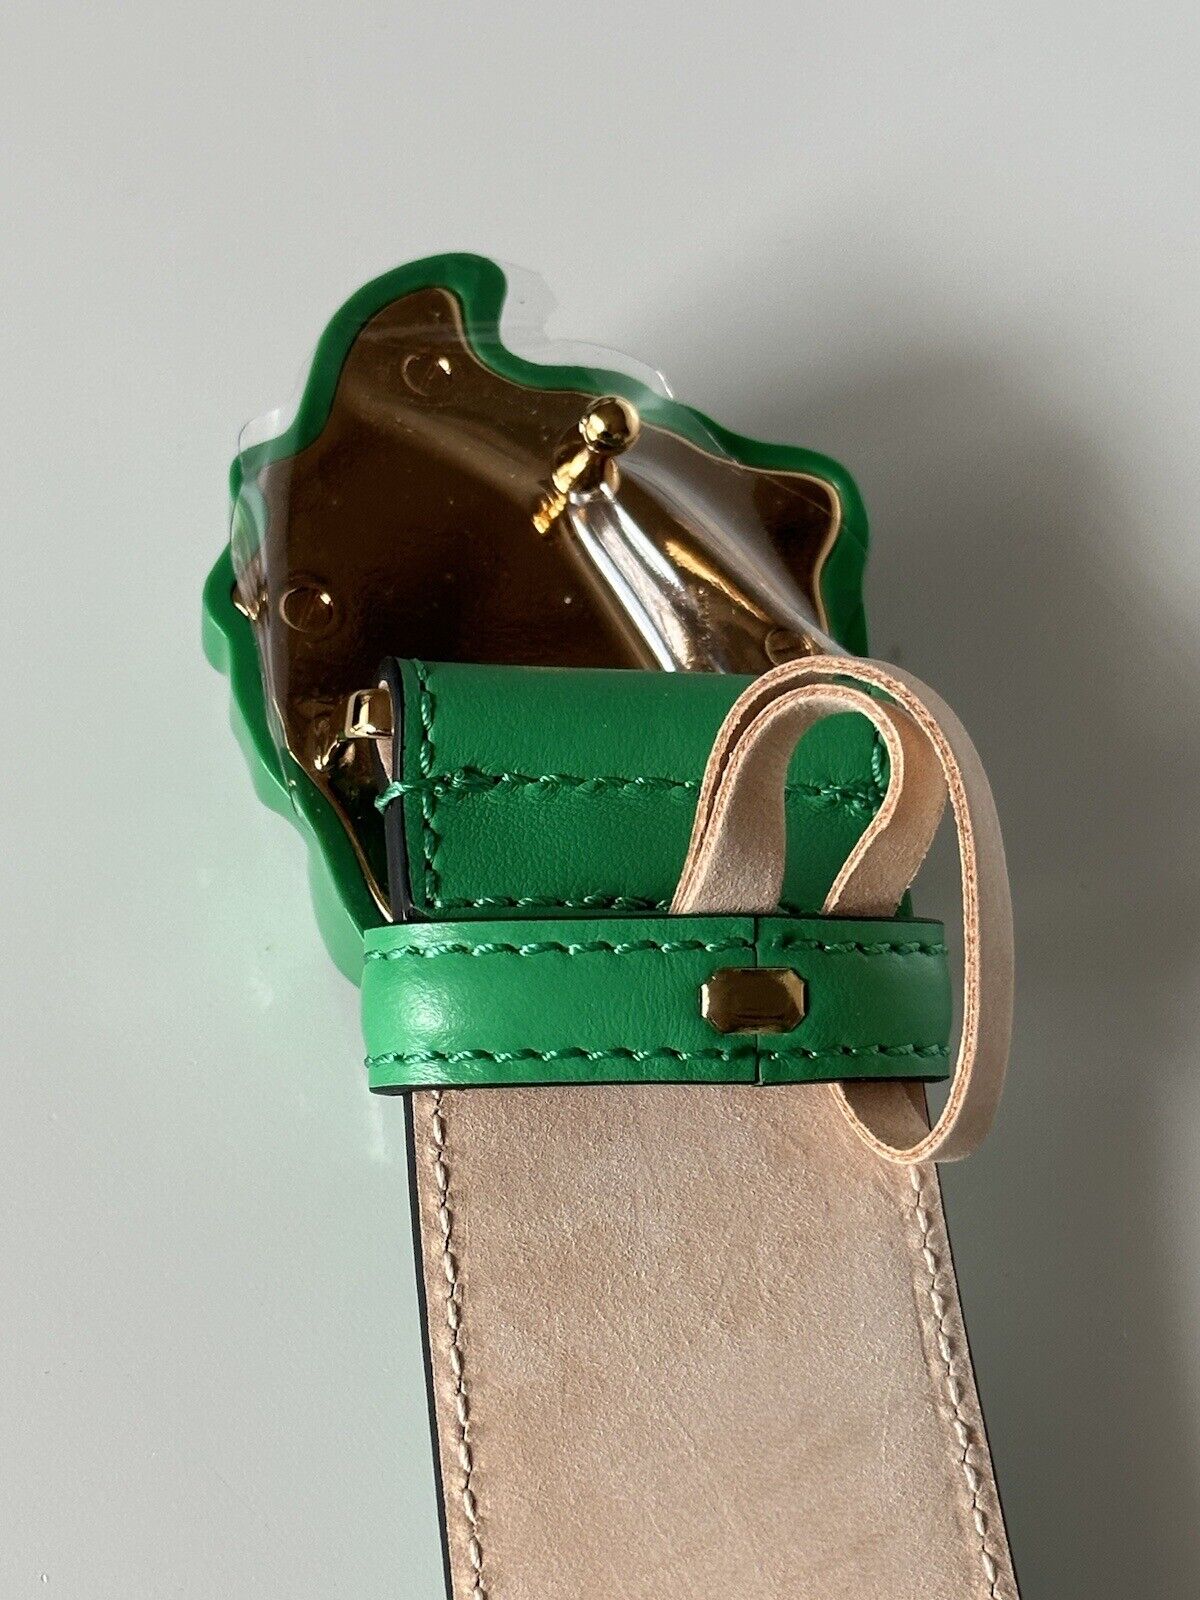 NWT $525 Versace Ярко-зеленый кожаный ремень с пряжкой Medusa 115 (46) Италия DCU4140 